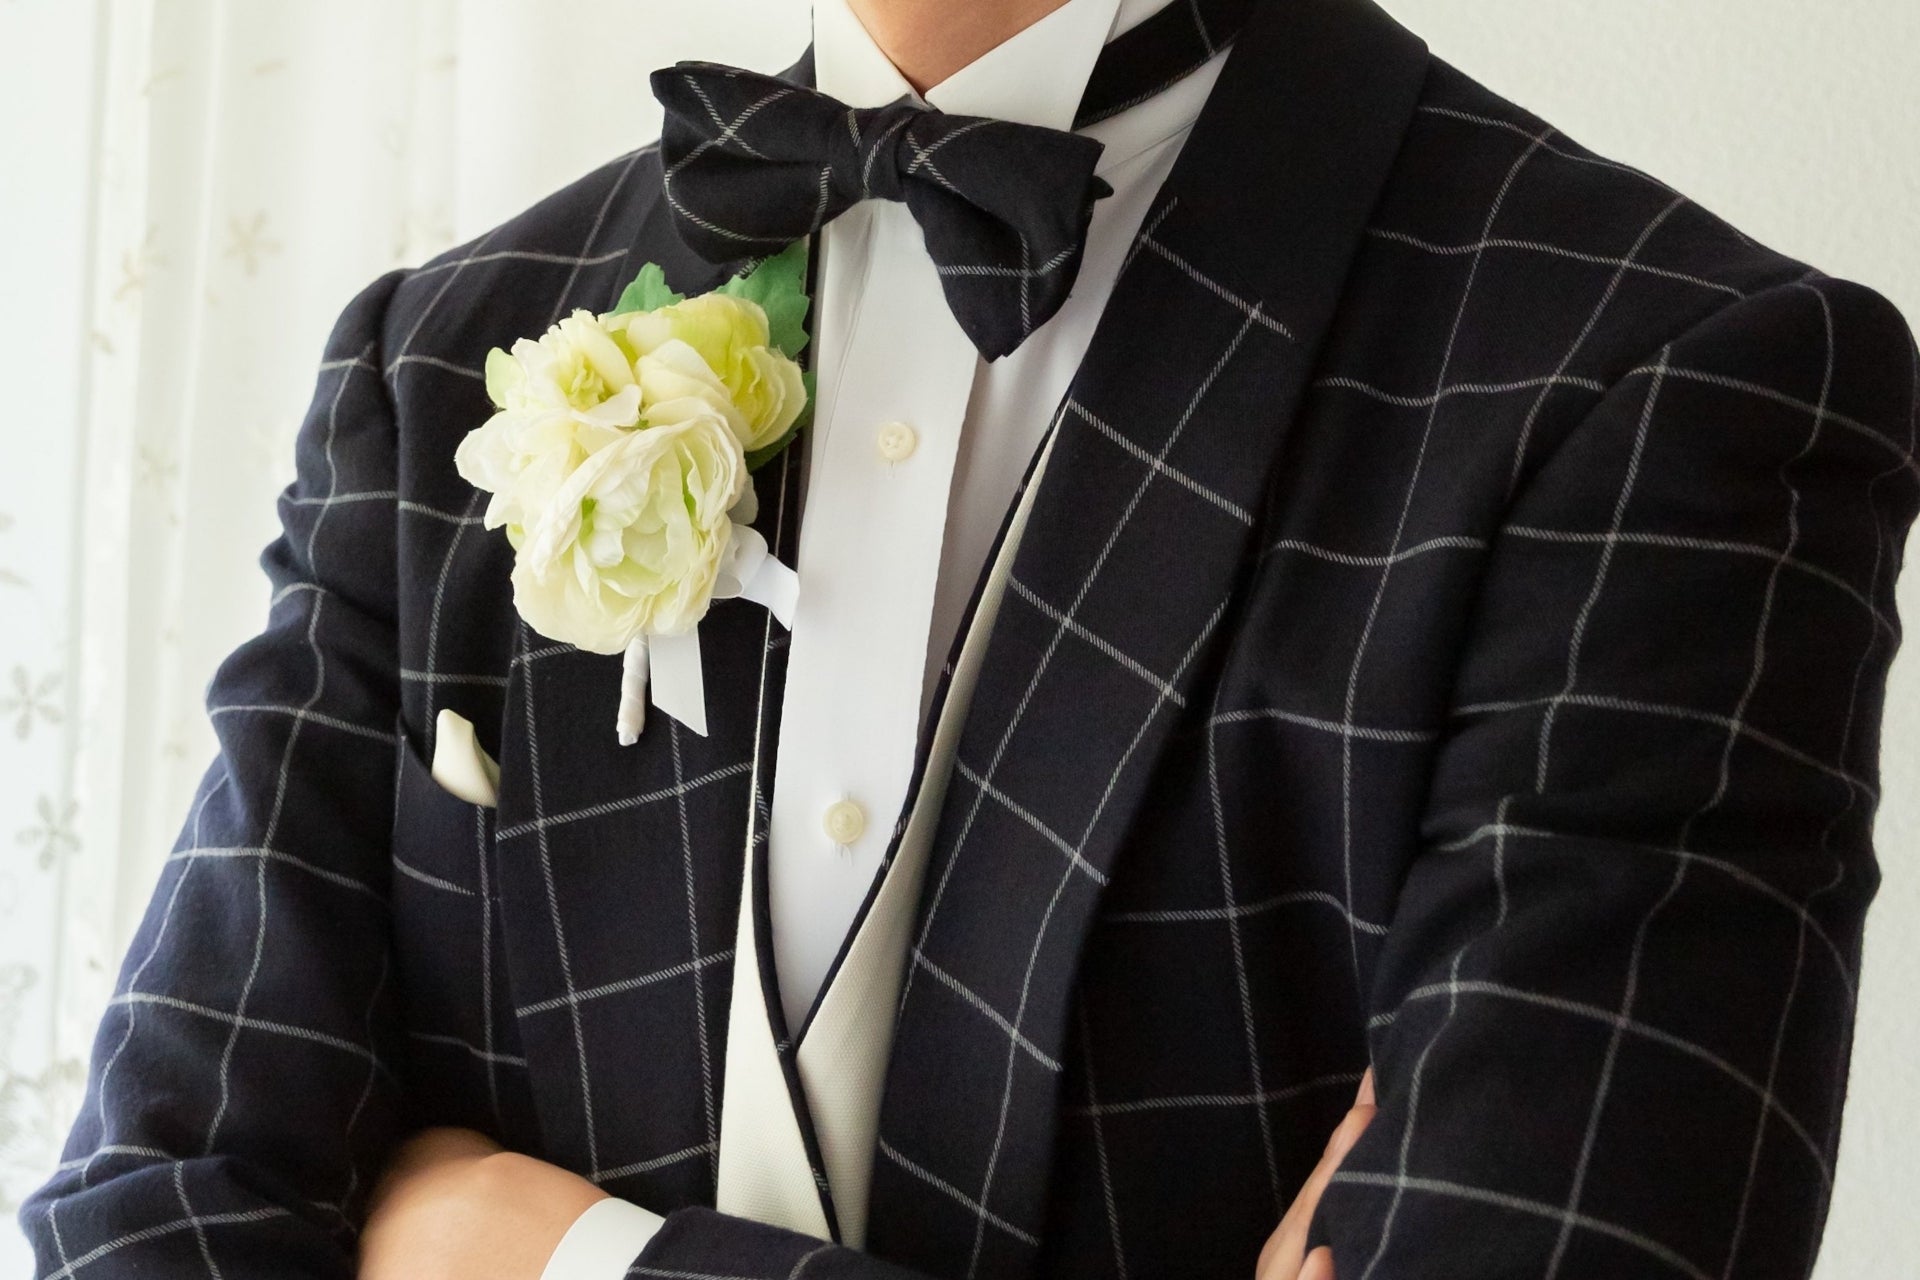 男性必見 結婚式のお呼ばれの服装マナーとは メンズスーツをおしゃれに着こなそう Marry Gift